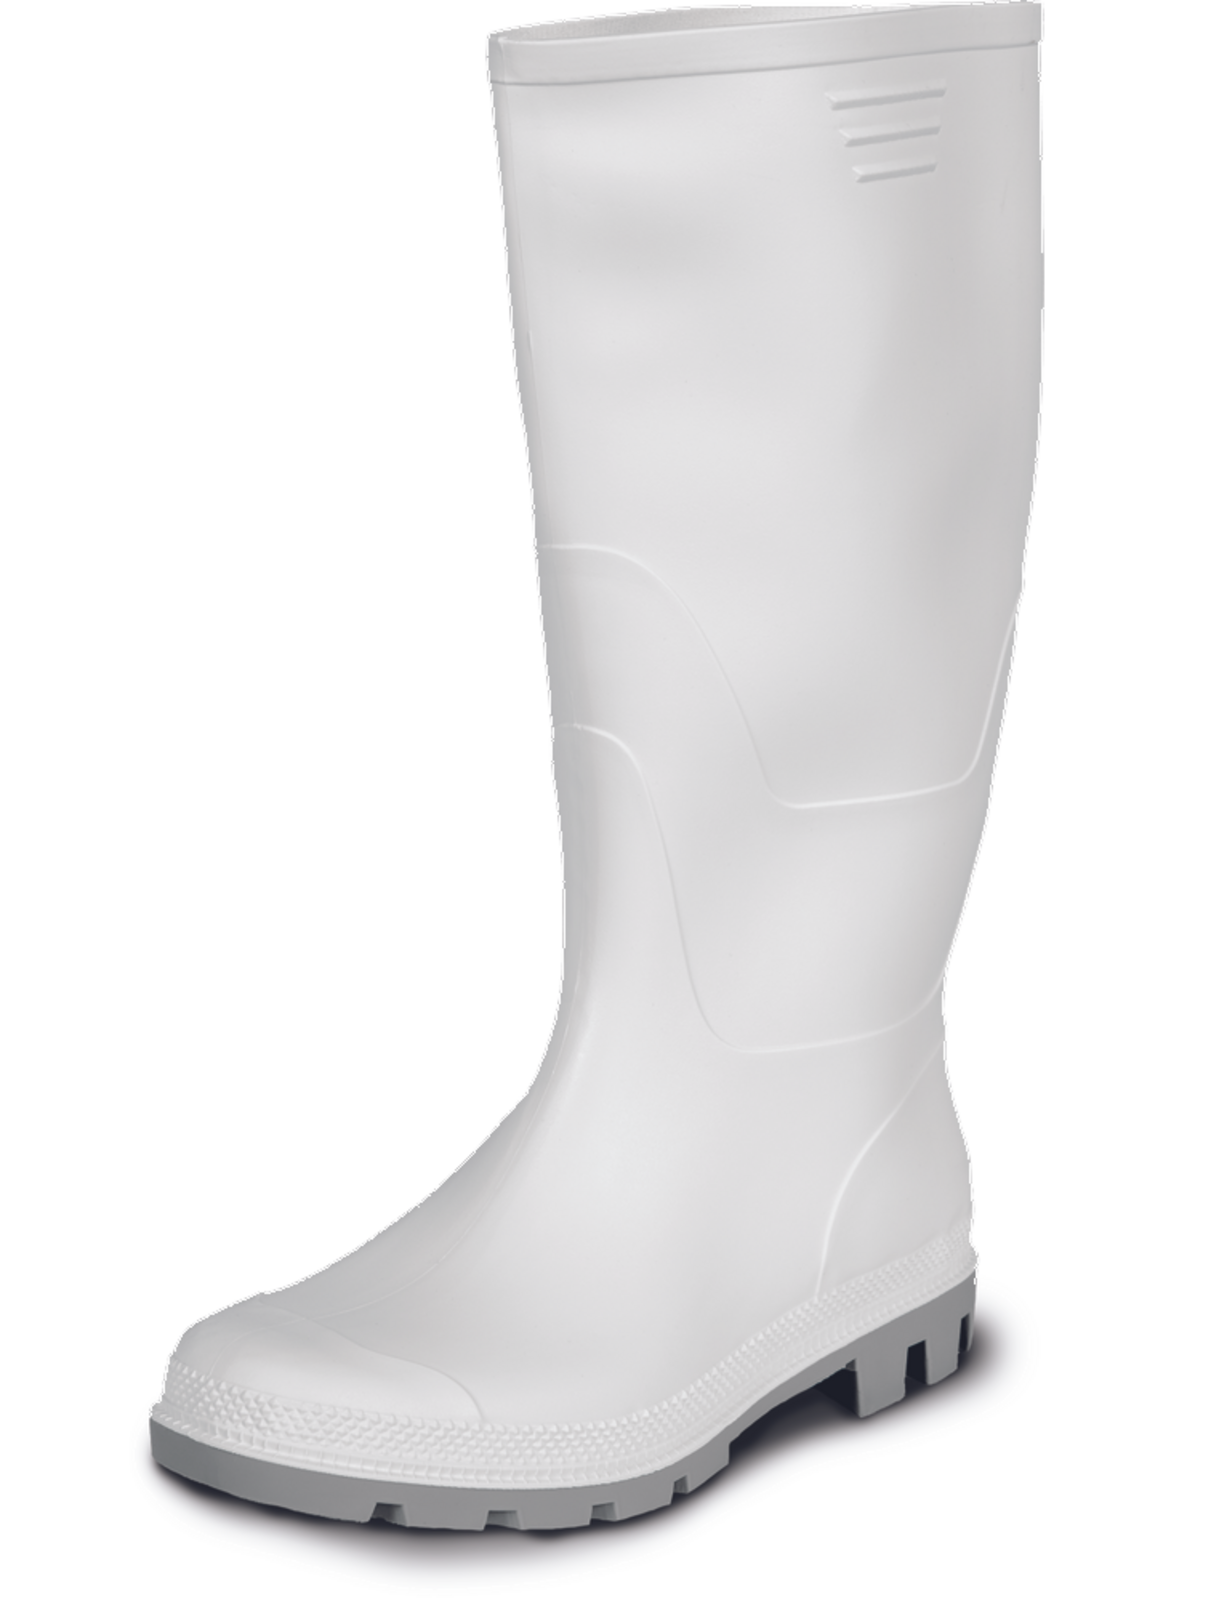 Gumáky Boots Ginocchio PVC - veľkosť: 45, farba: biela